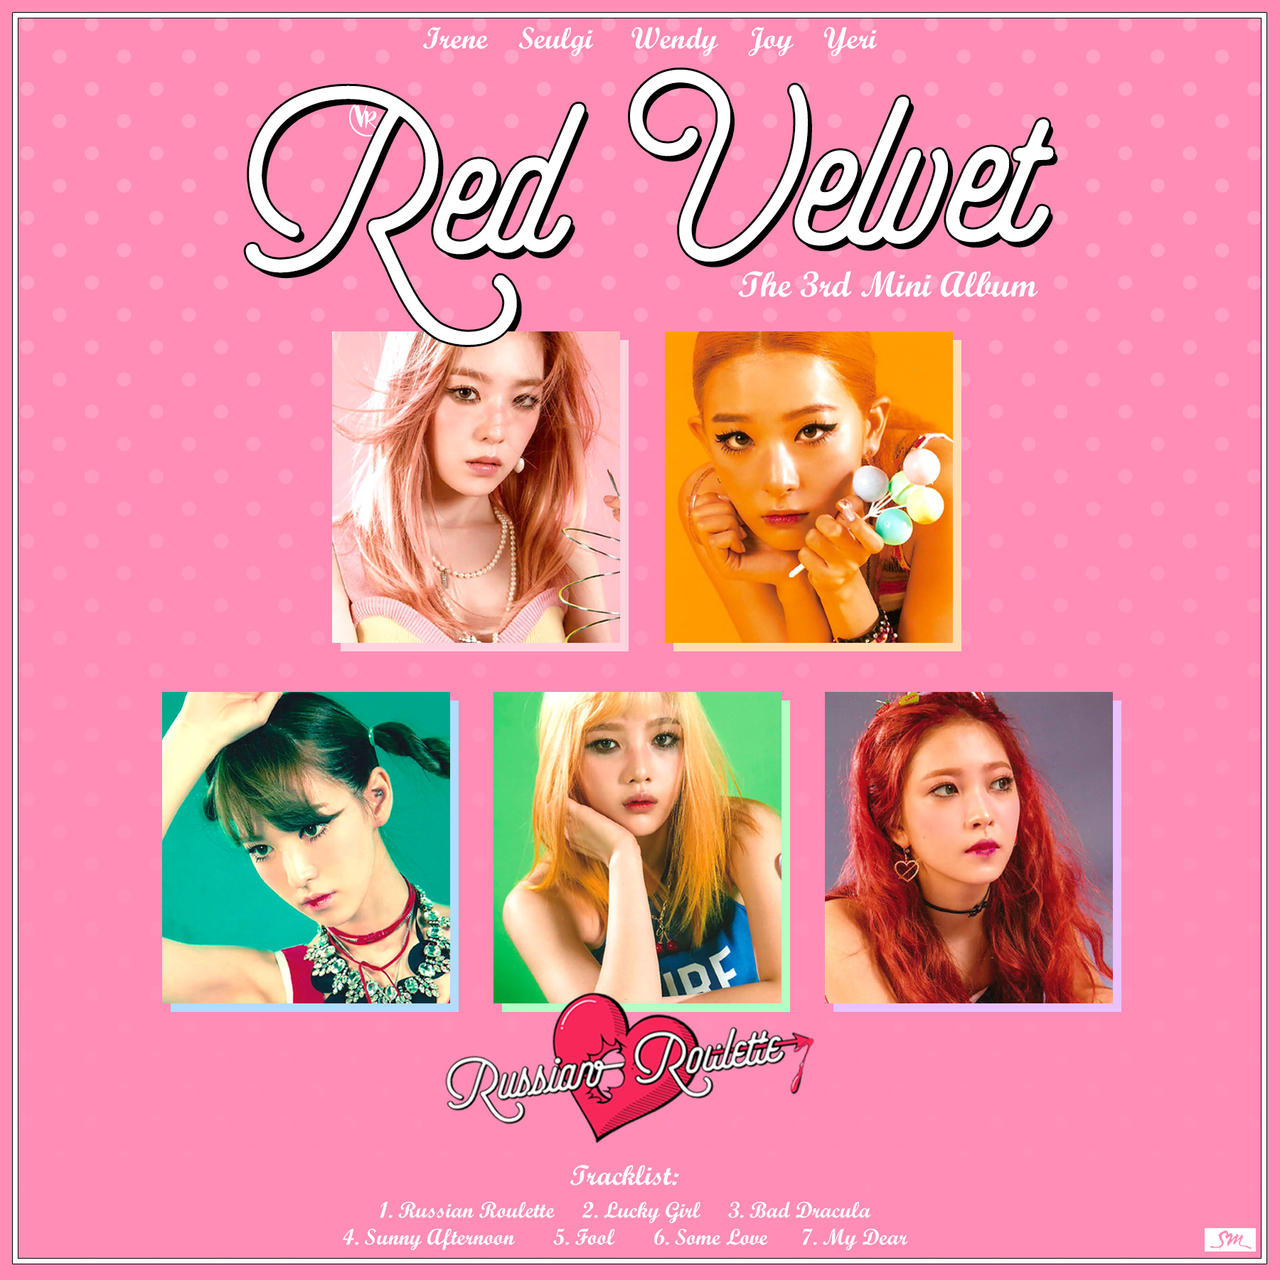 Red Velvet - Russian Roulette (4) by vanessa-van3ss4 on DeviantArt